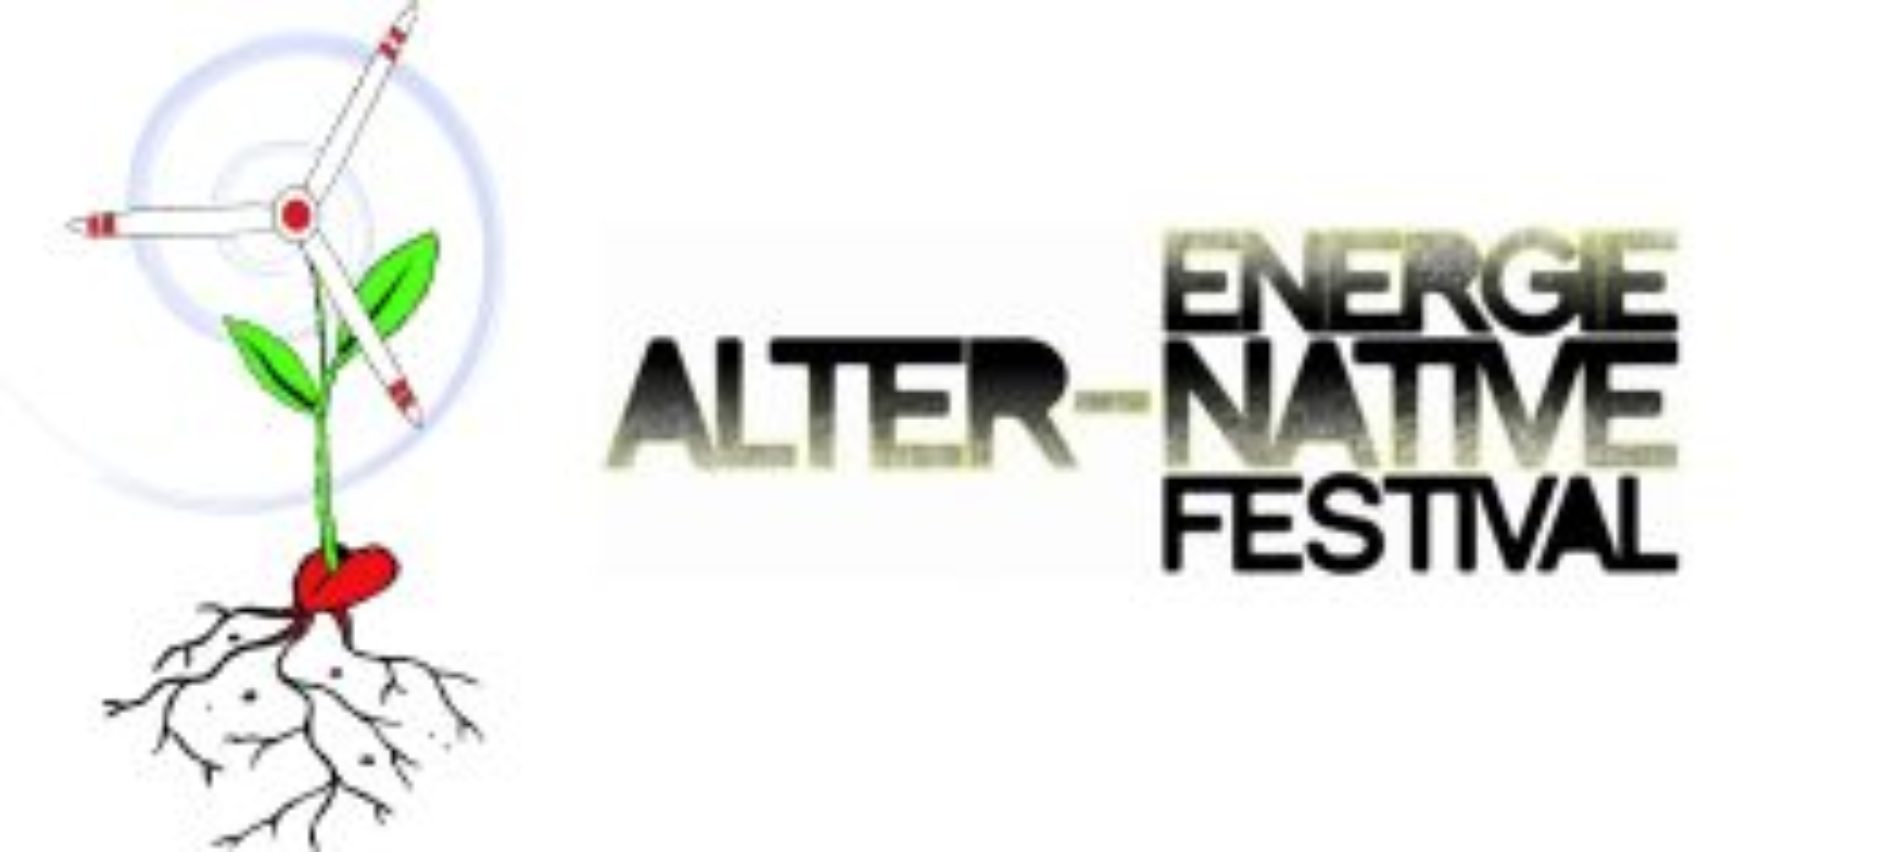 PALERMO-CATANIA-GIBELLINA/ Riparte a Settembre il Festival energie alter-native 2015, il primo e unico festival in Italia dedicato alle energie pulite”.